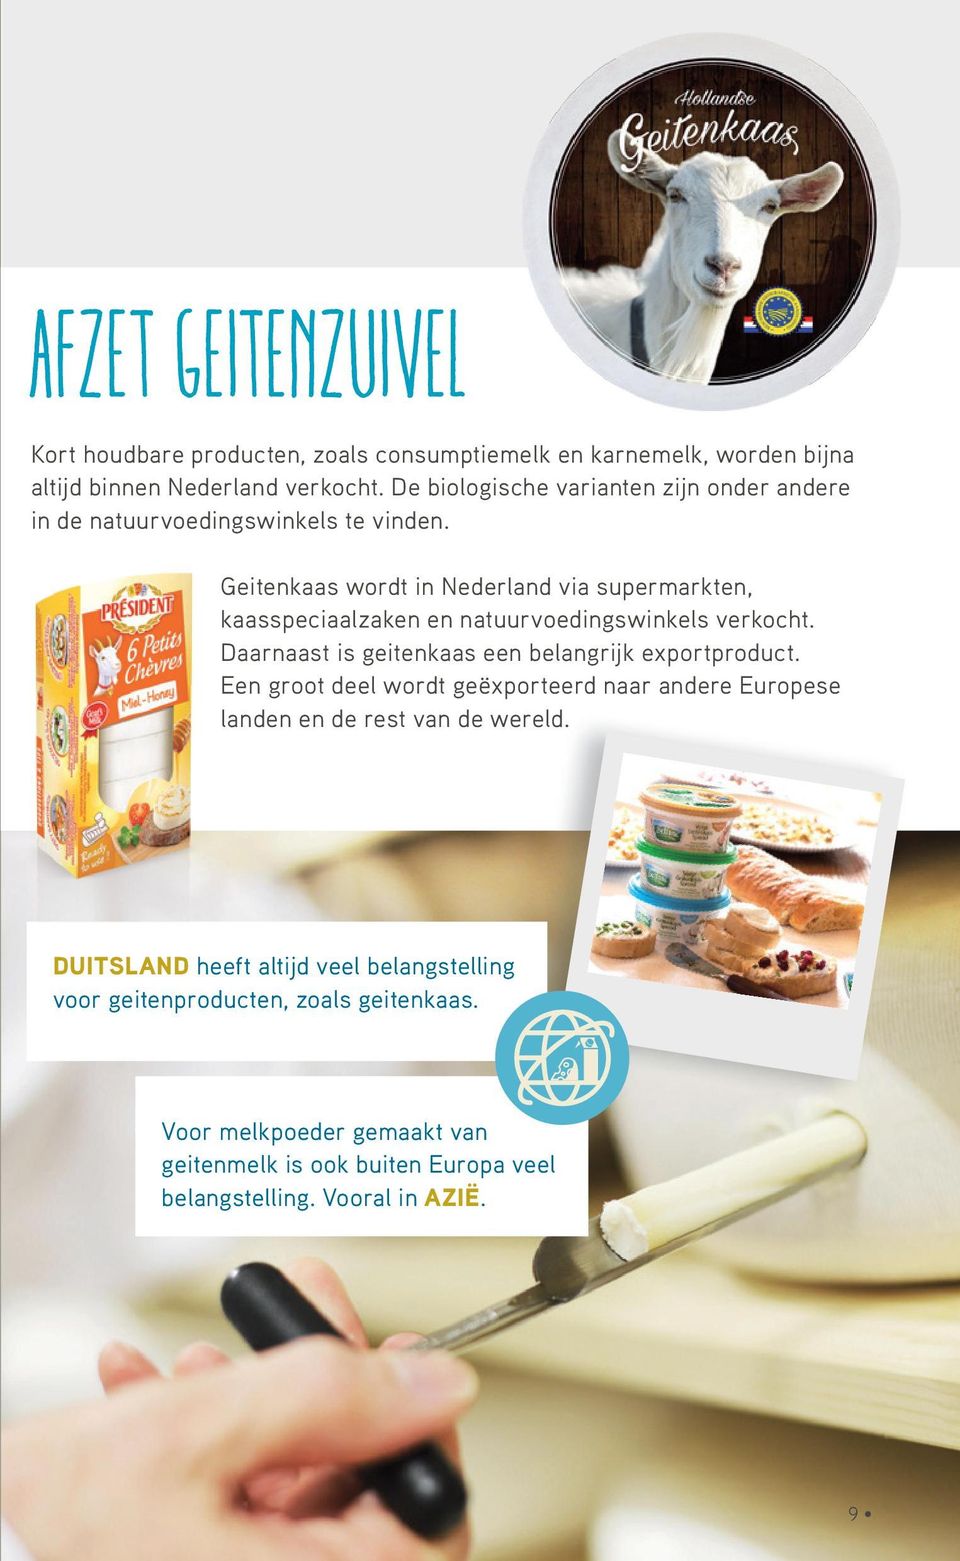 Geitenkaas wordt in Nederland via supermarkten, kaasspeciaalzaken en natuurvoedingswinkels verkocht. Daarnaast is geitenkaas een belangrijk exportproduct.